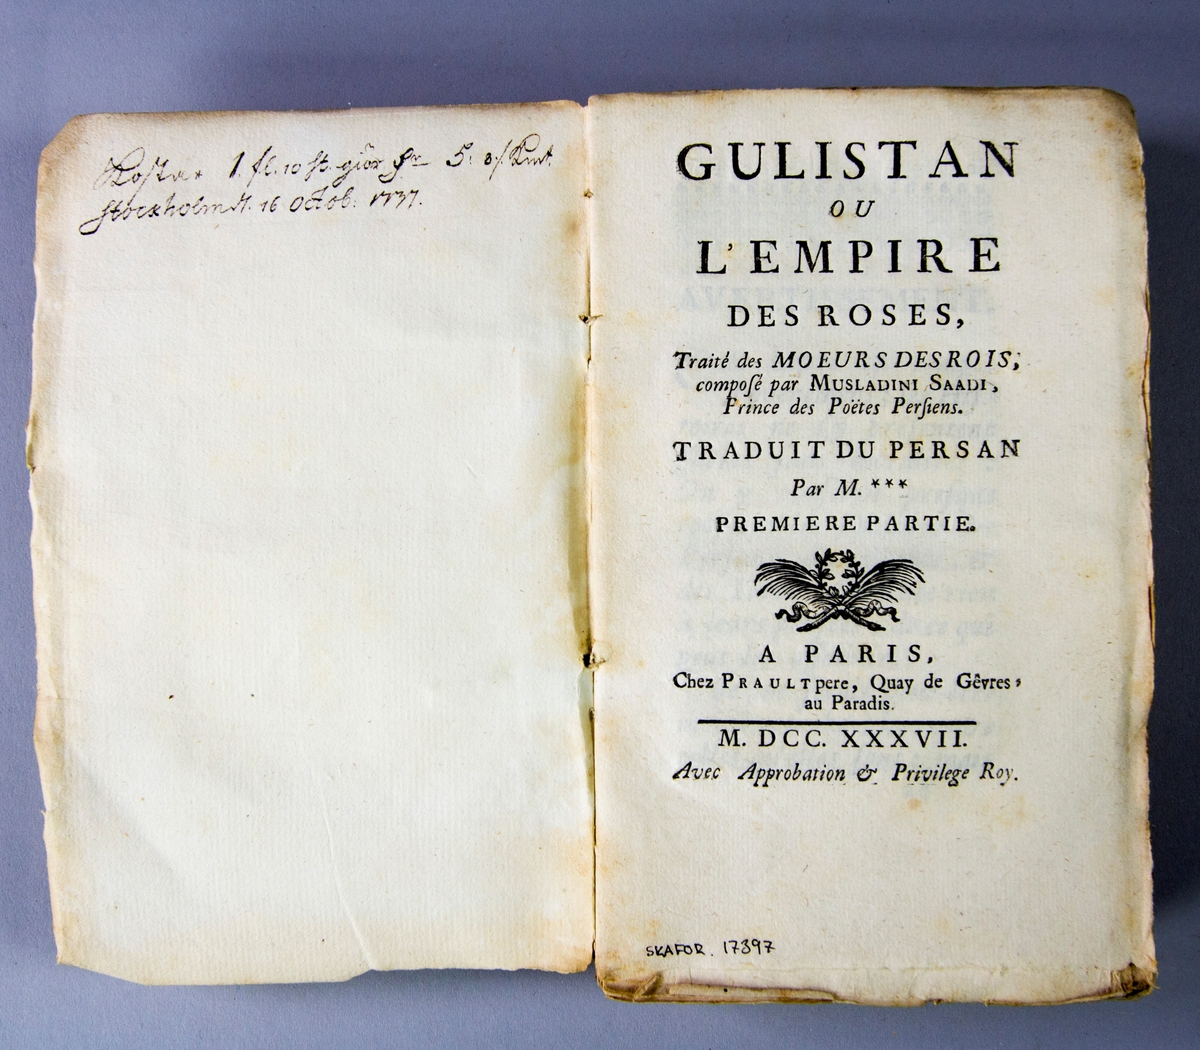 Bok, pappband, "Gulistan ou l'empire des roses", skriven av Musladini Saadi, tryckt 1737 i Paris. Pärmar av marmorerat papper, blekt rygg med påklistrade etiketter, oläsliga. Oskuret snitt. Anteckning om inköp på pärmens insida.